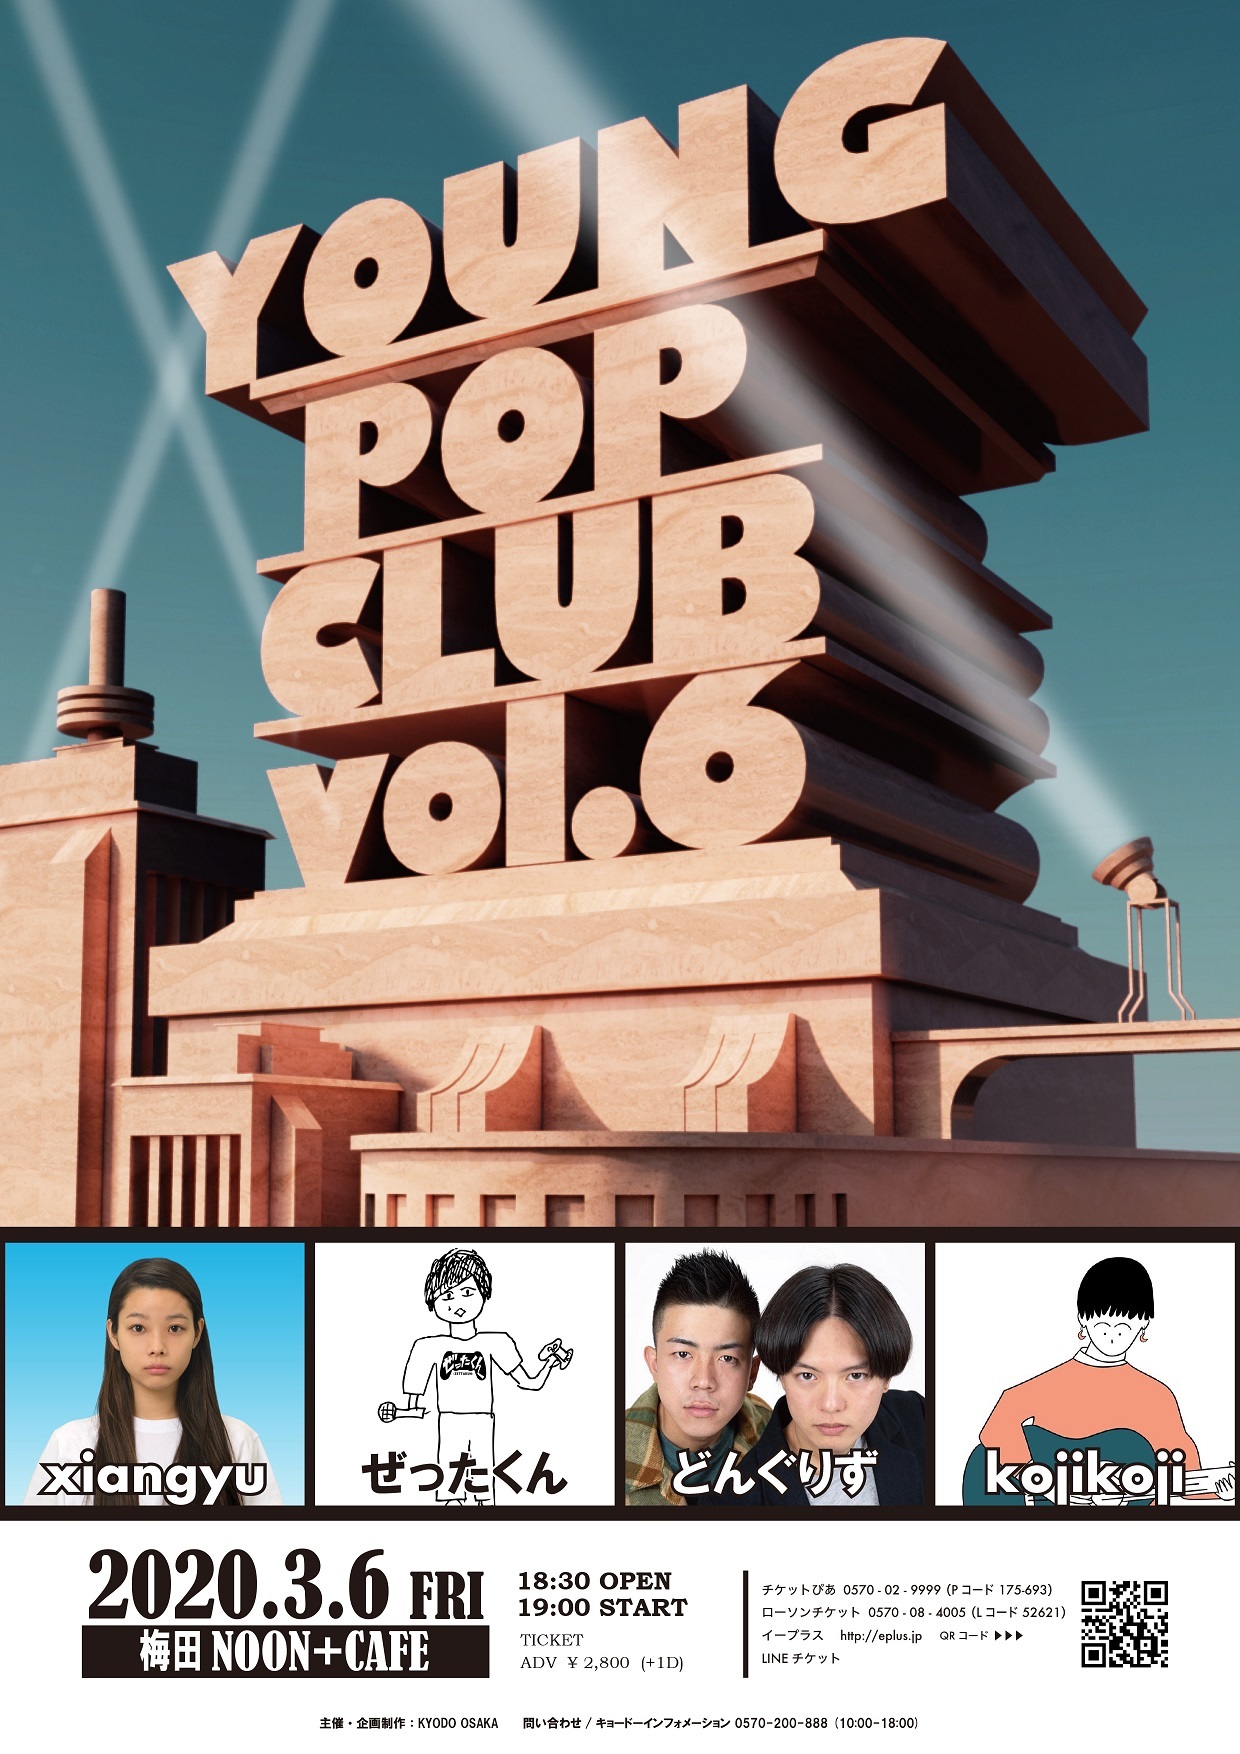 『YOUNG POP CLUB VOL.6』